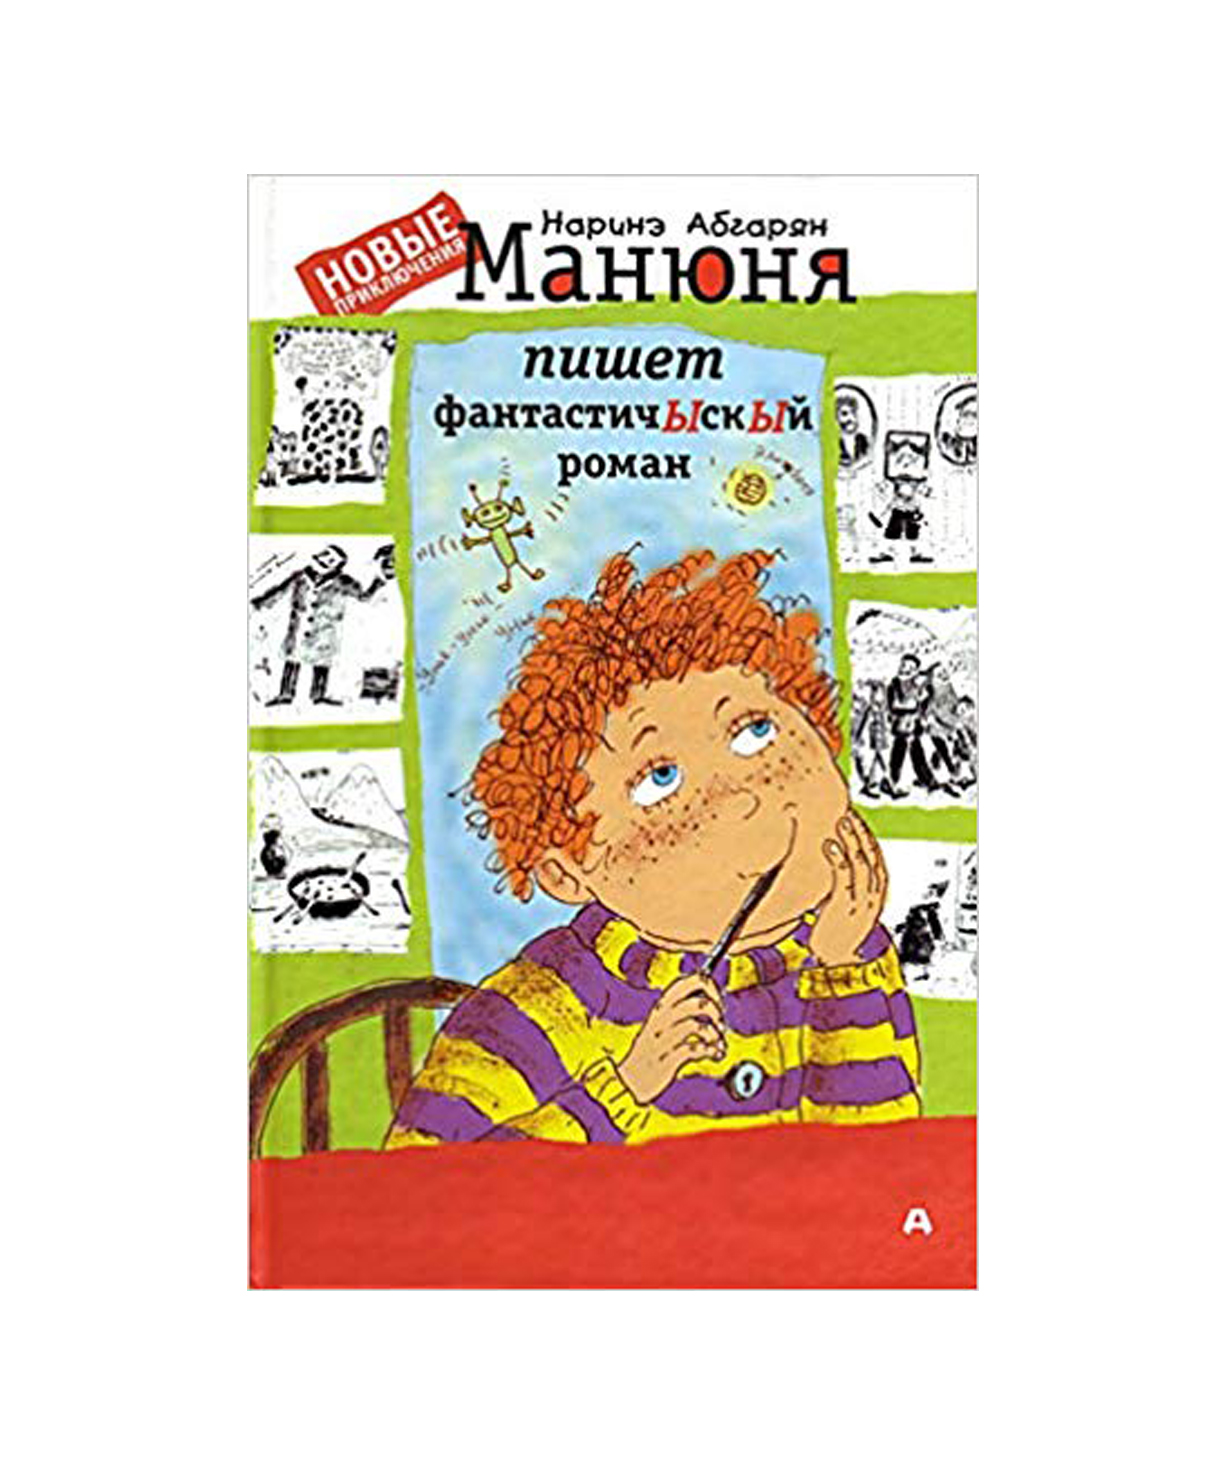 Գիրք «Մանյունյան գրում է ֆանտասԾիկ վեպ» Նարինե Աբգարյան / ռուսերեն